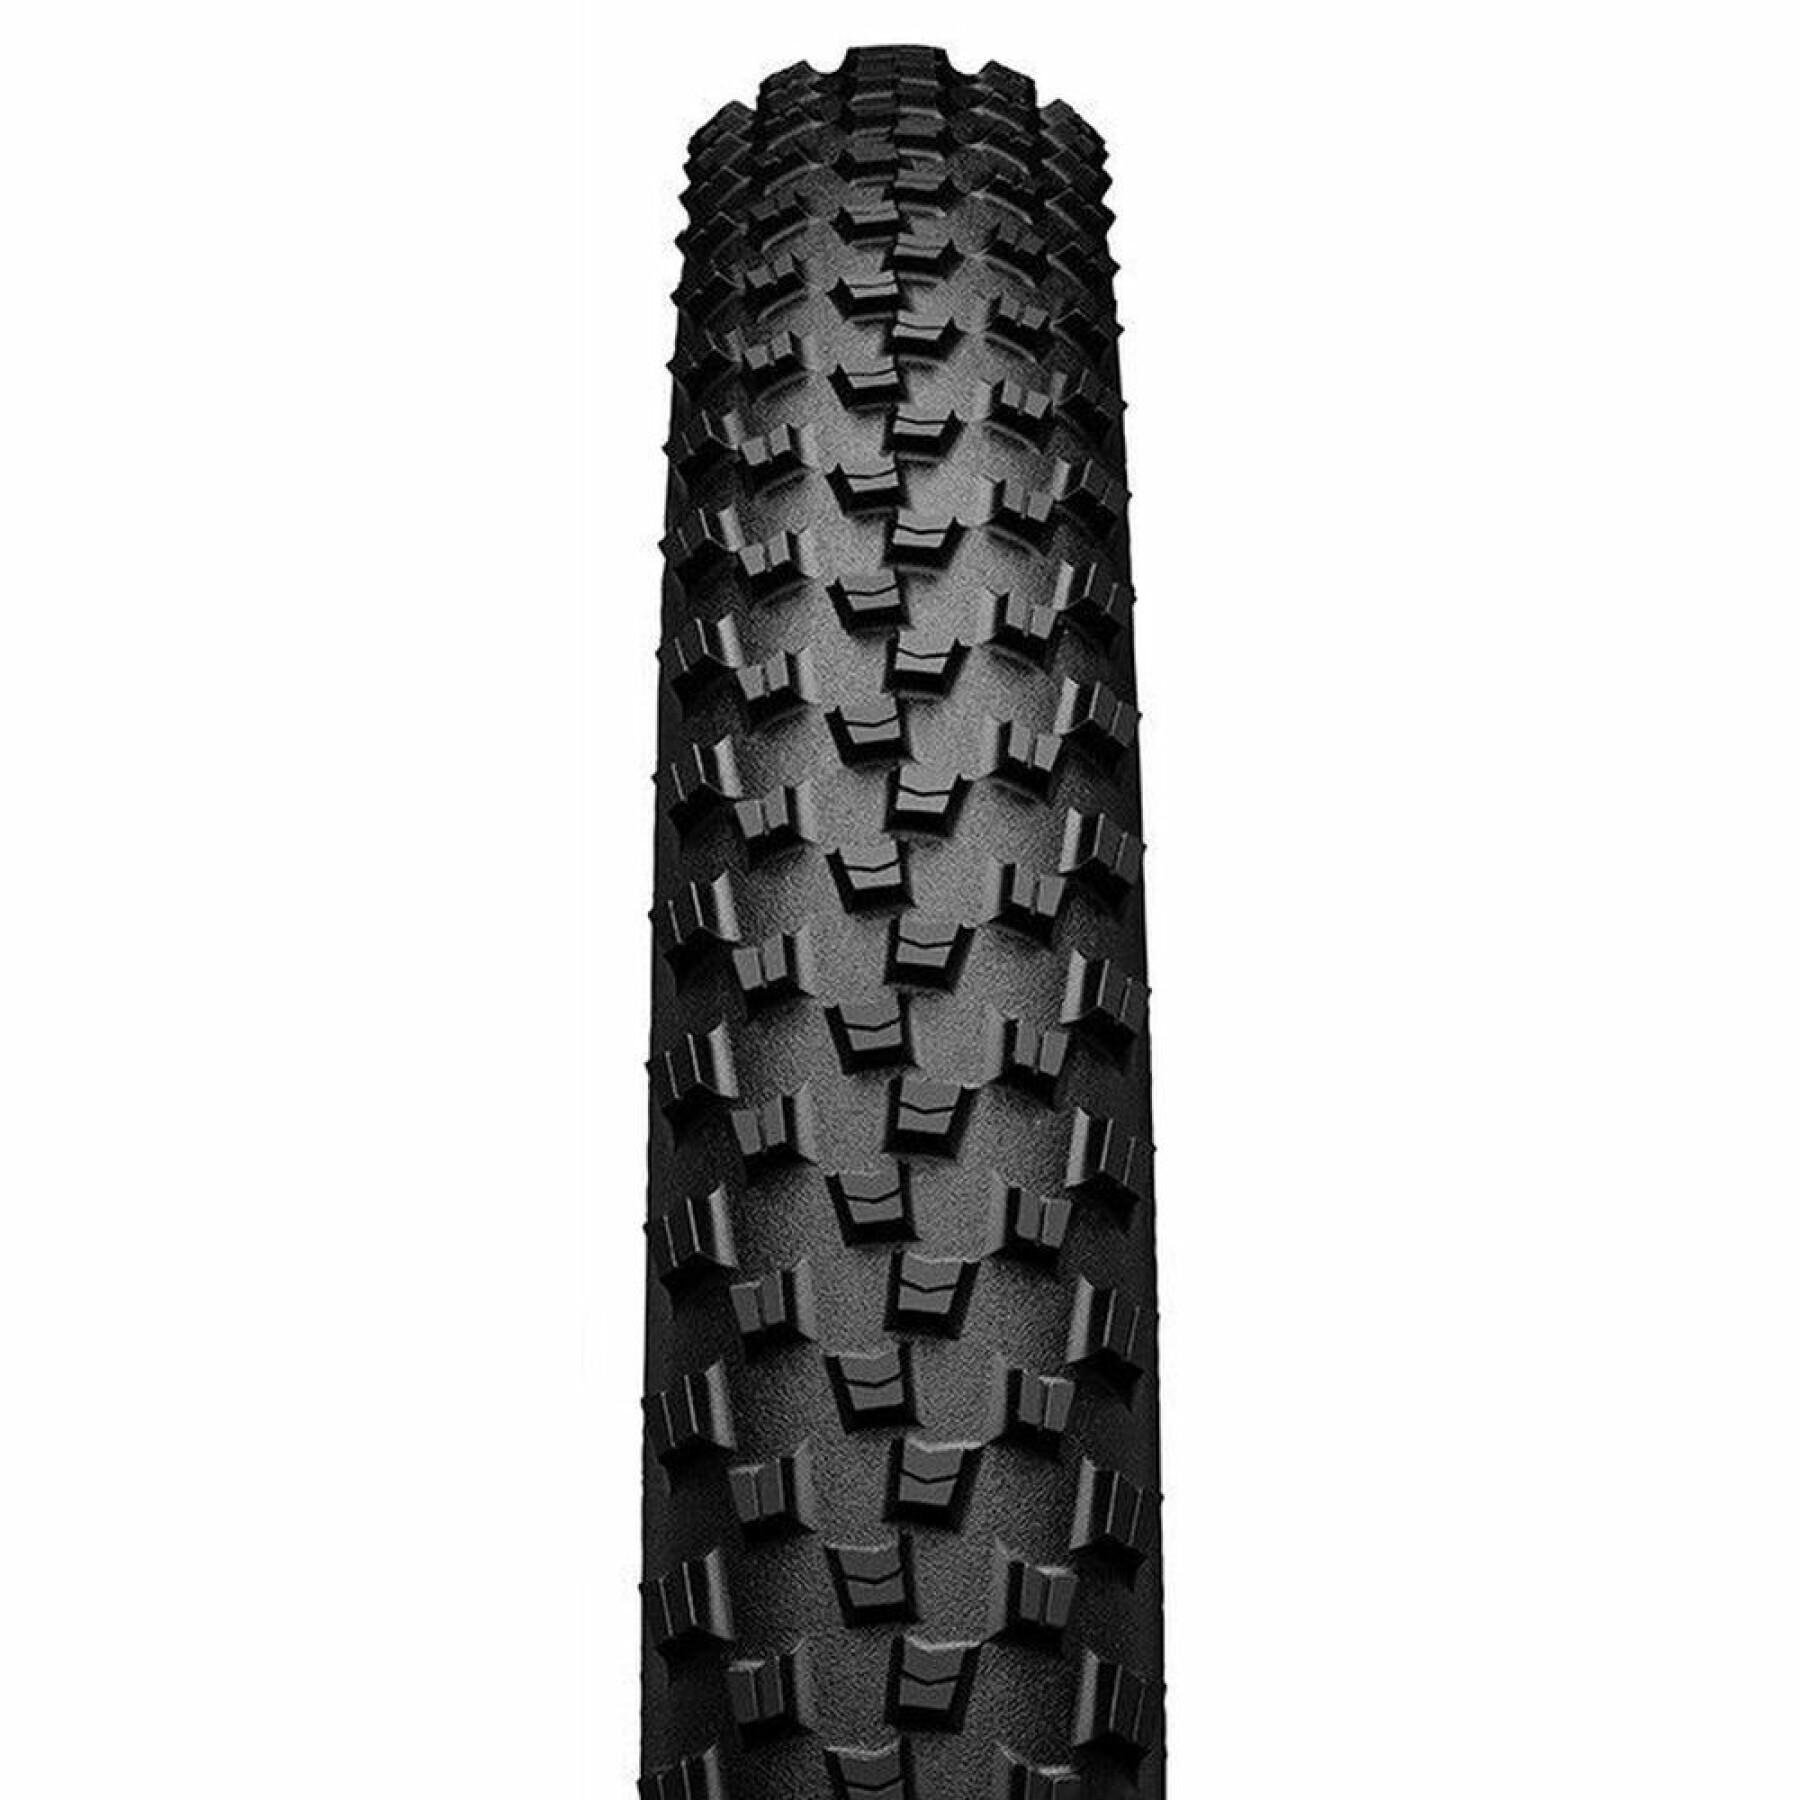 Rigid tire Continental Cross King Skin 55-584